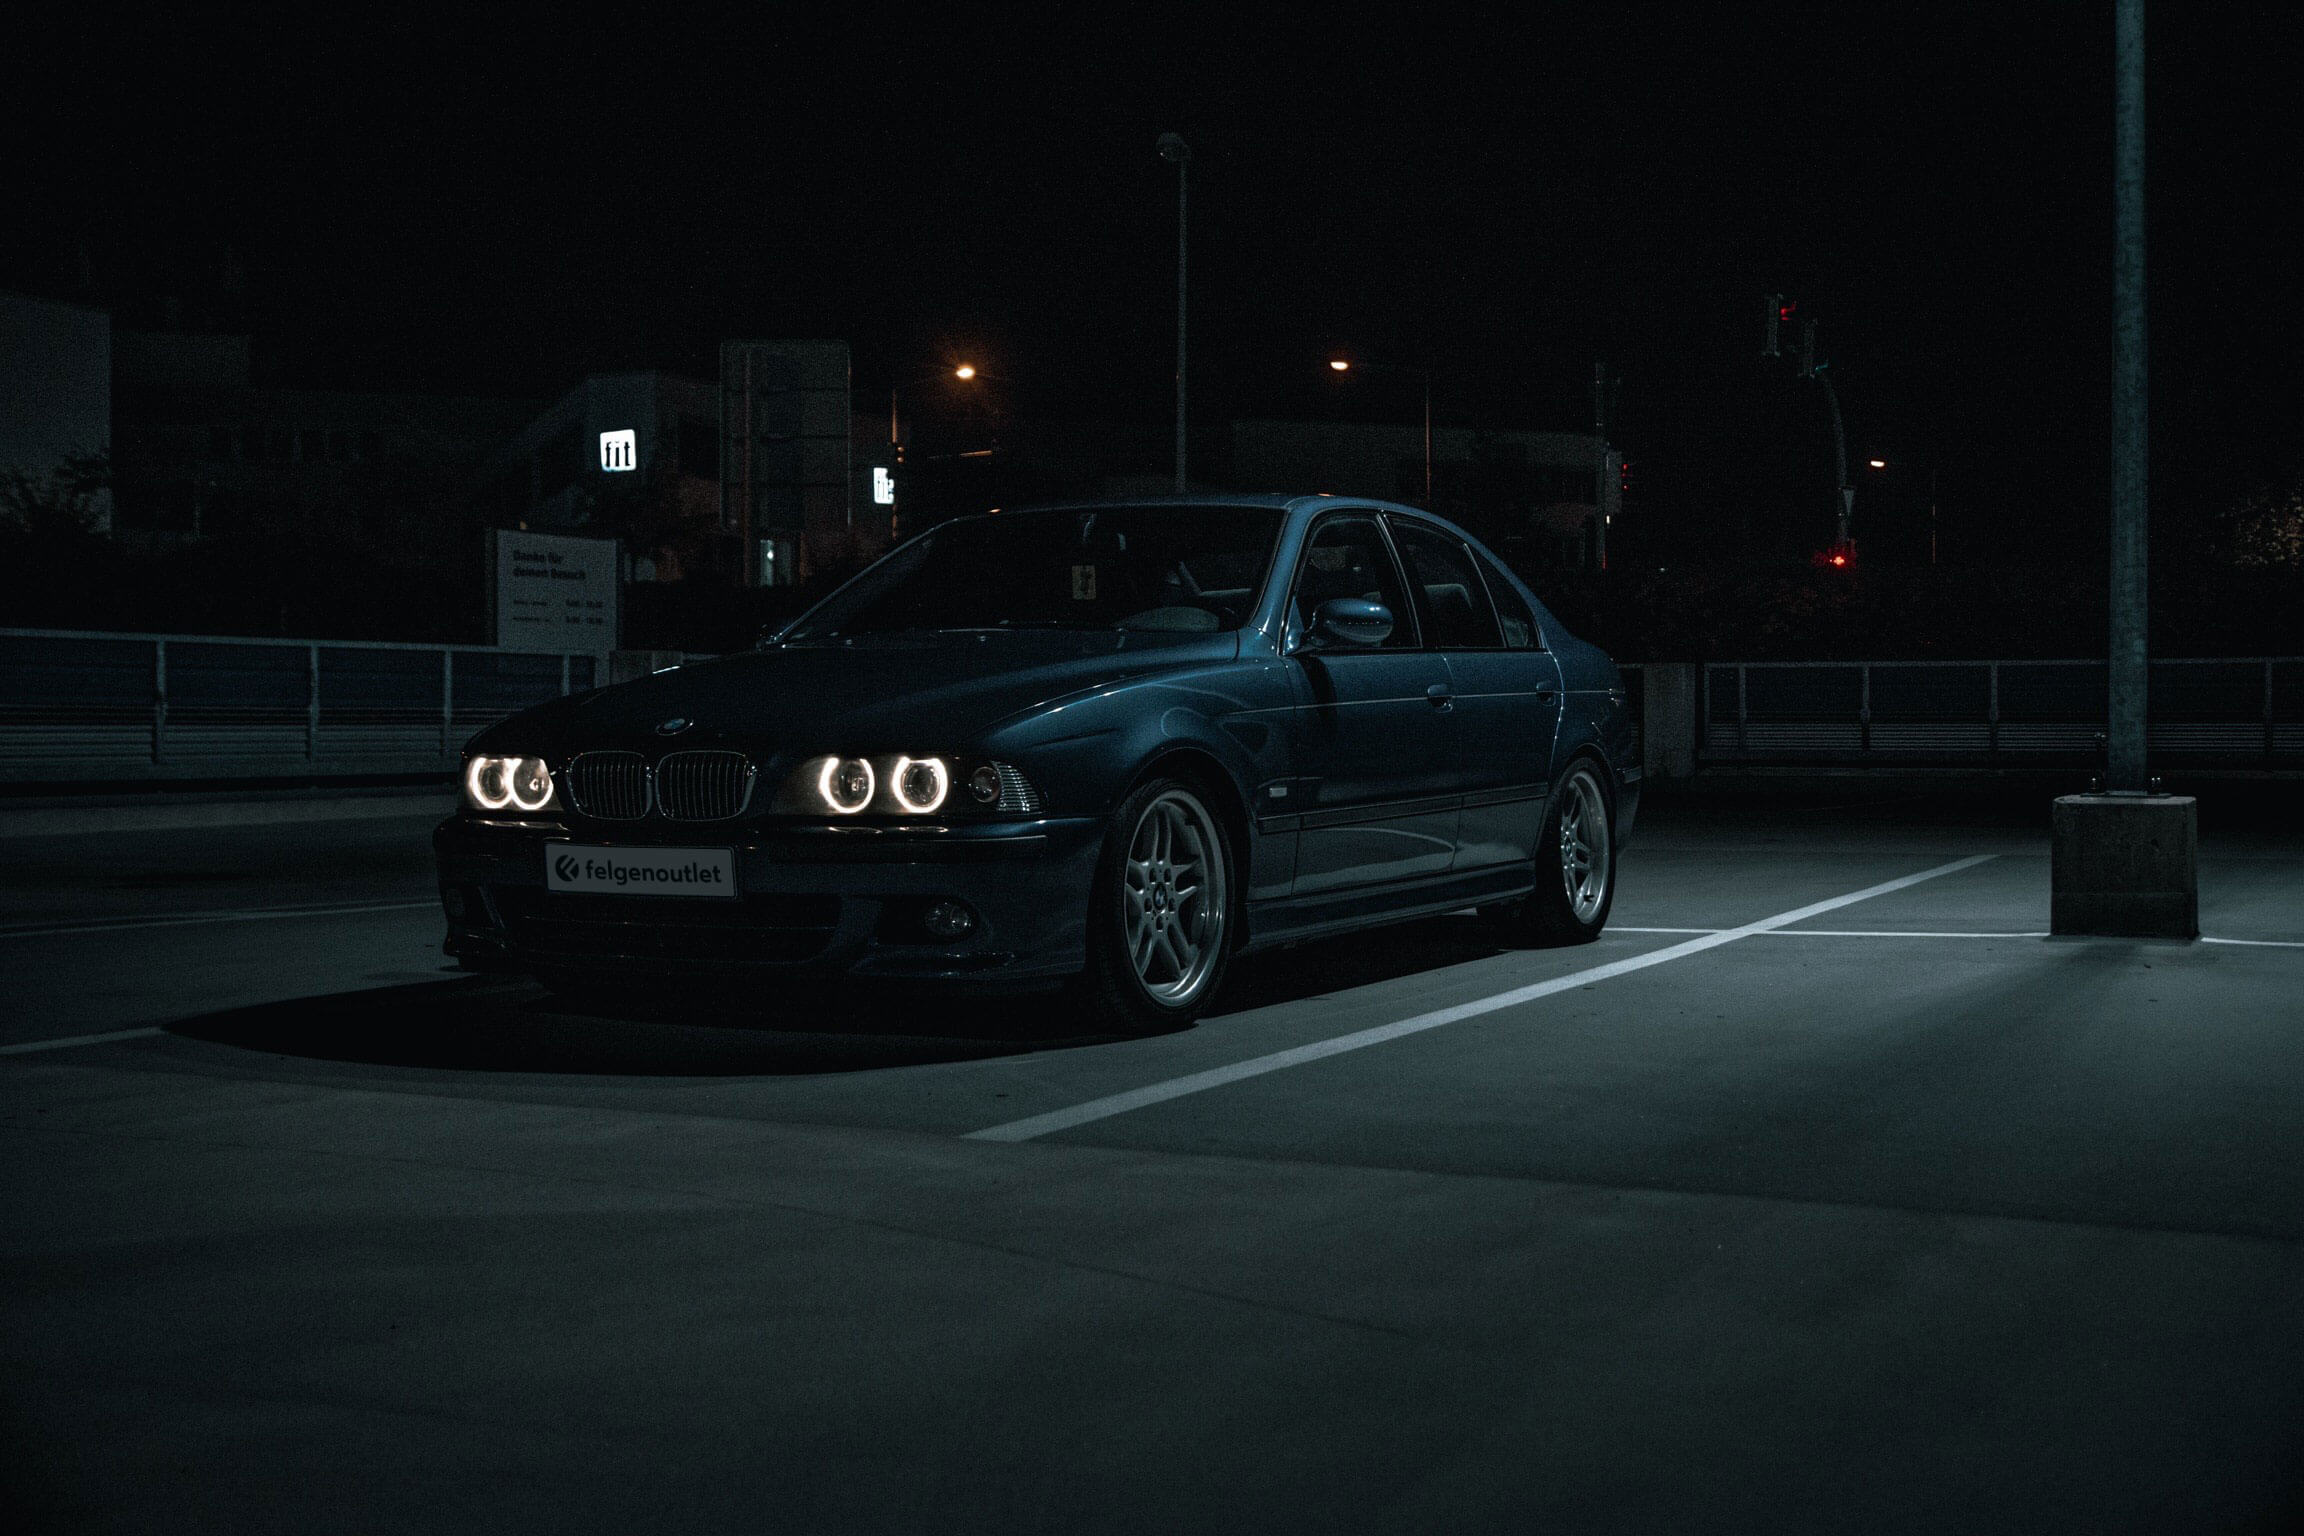 Der Vielseitige: Andrés 5er BMW E39 540i - felgenoutlet Blog